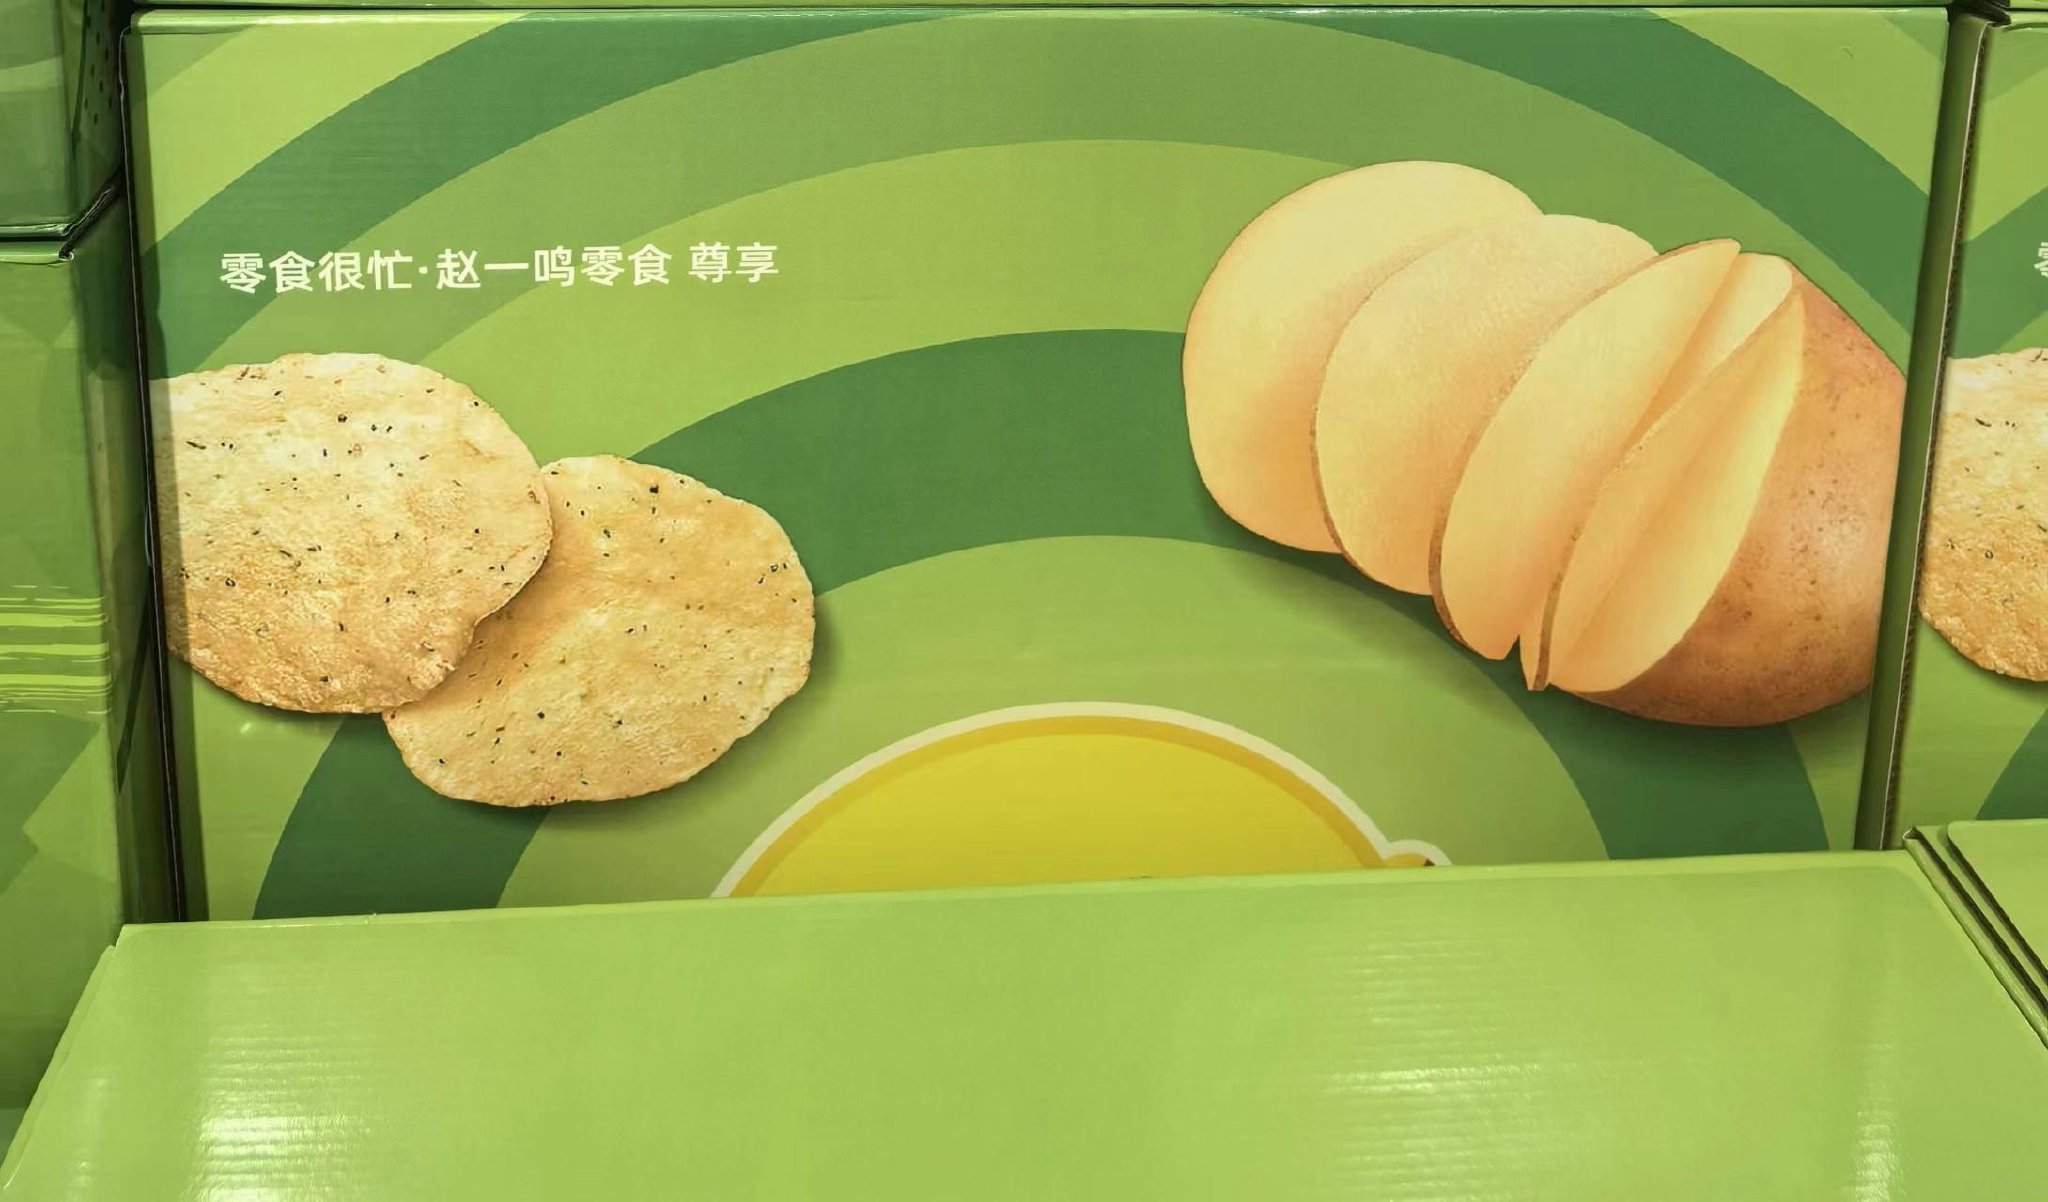 超级零食很忙门店内某品牌薯片 财联社记者摄